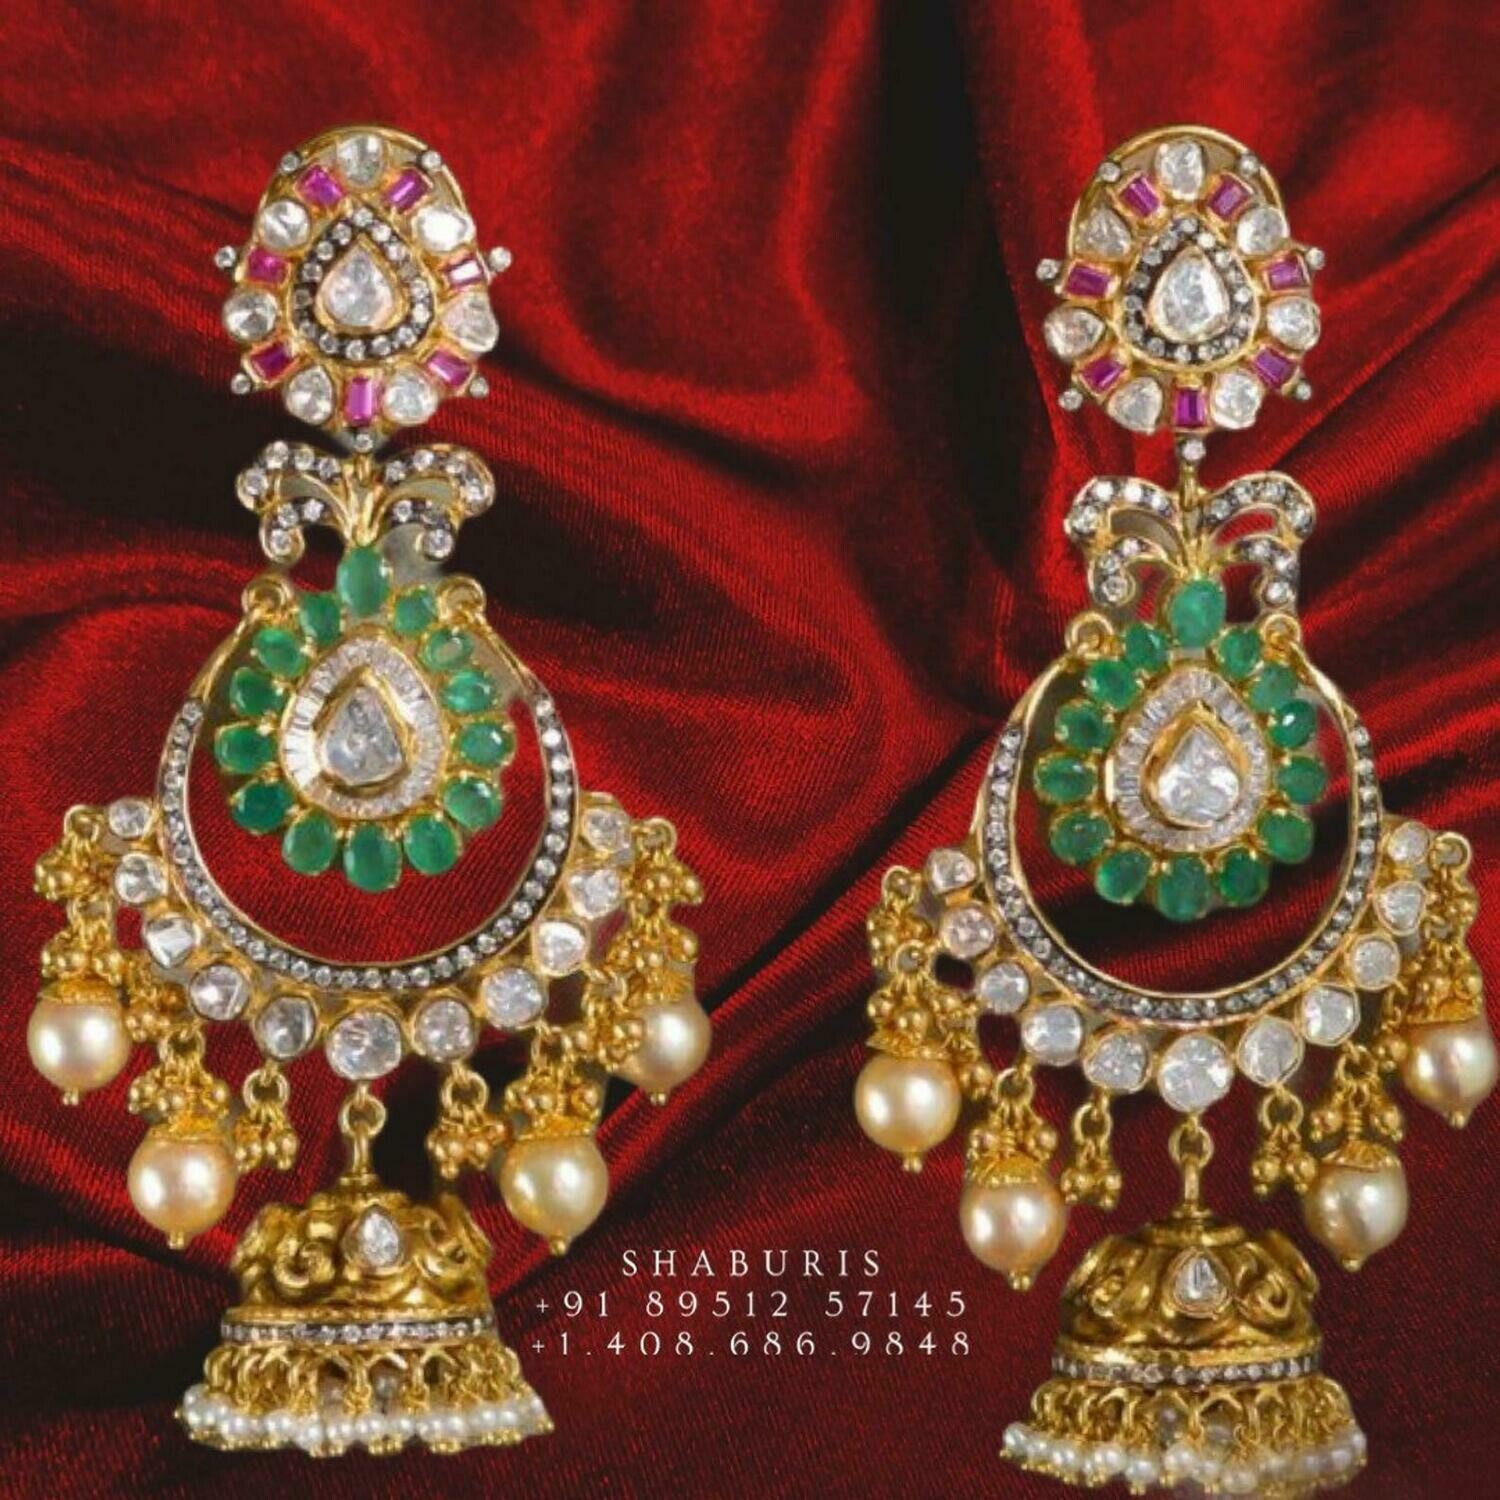 Polki earrings pure silver jewelry indian polki jewelry indian bridal jewelry statement jewelry -SHABURIS